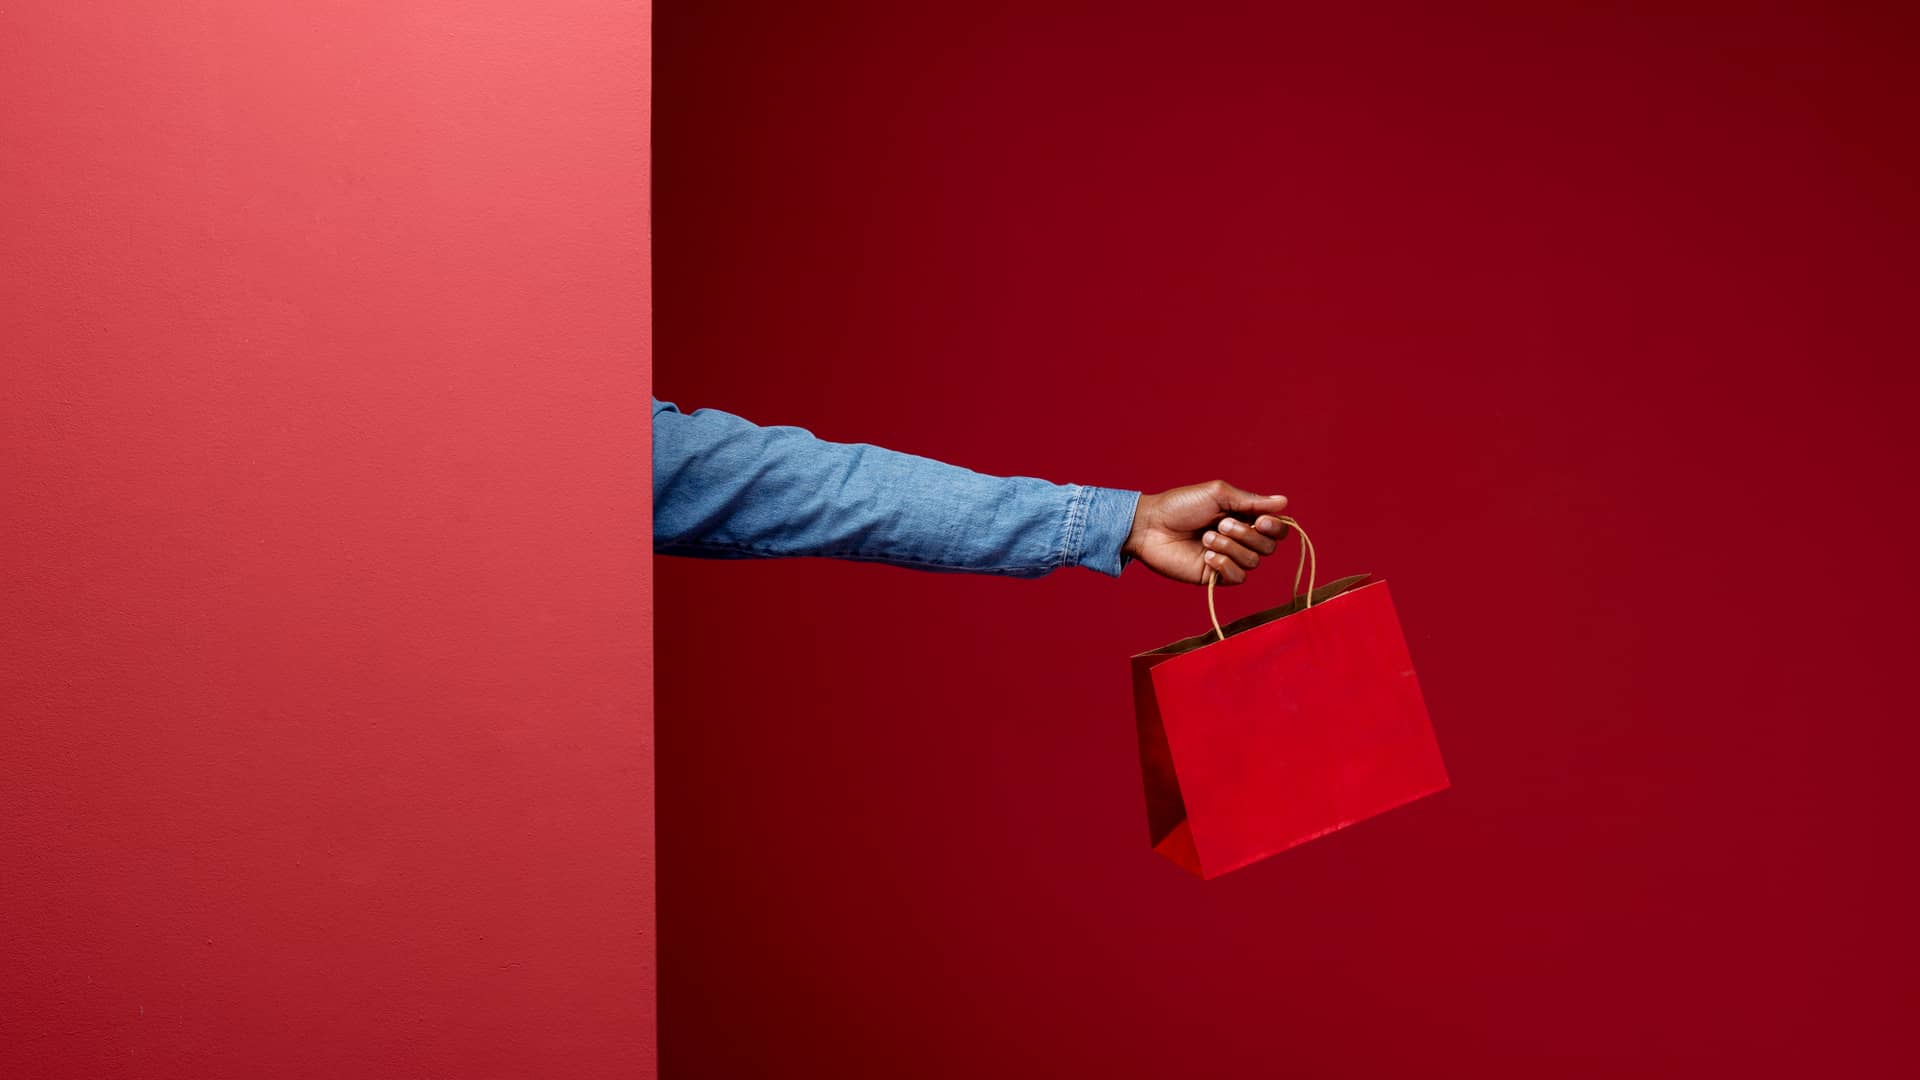 Mano sostiene una bolsa roja representando las ofertas del operador pepephone